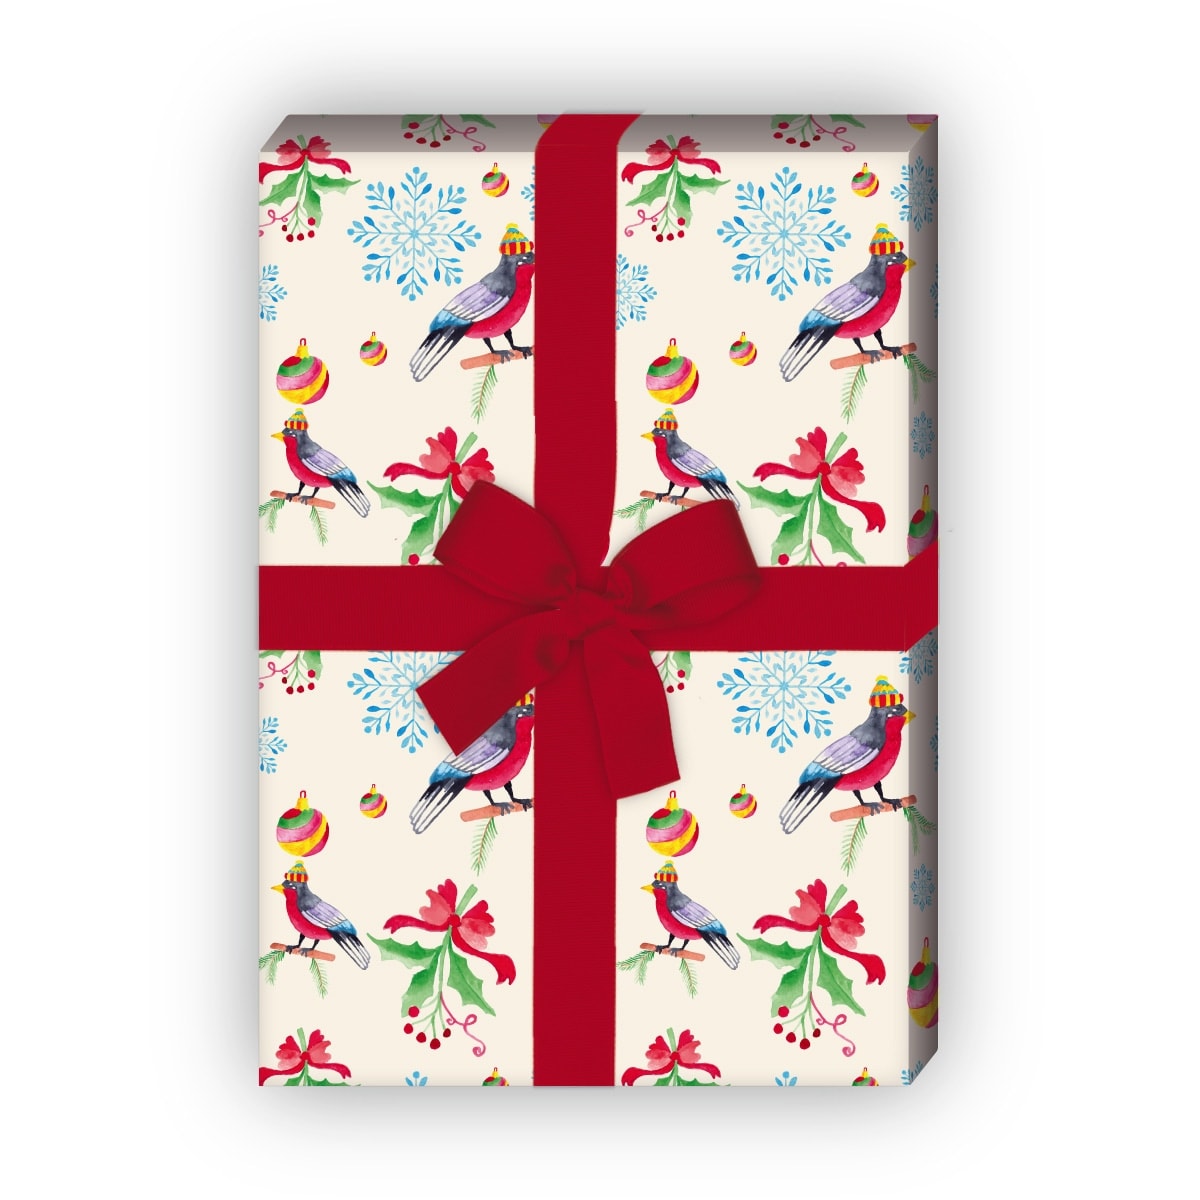 zum Weihnachtsgeschenk einpacken: Vogel Weihnachts Geschenkpapier mit Weihnachtskugeln, beige, jetzt online kaufen